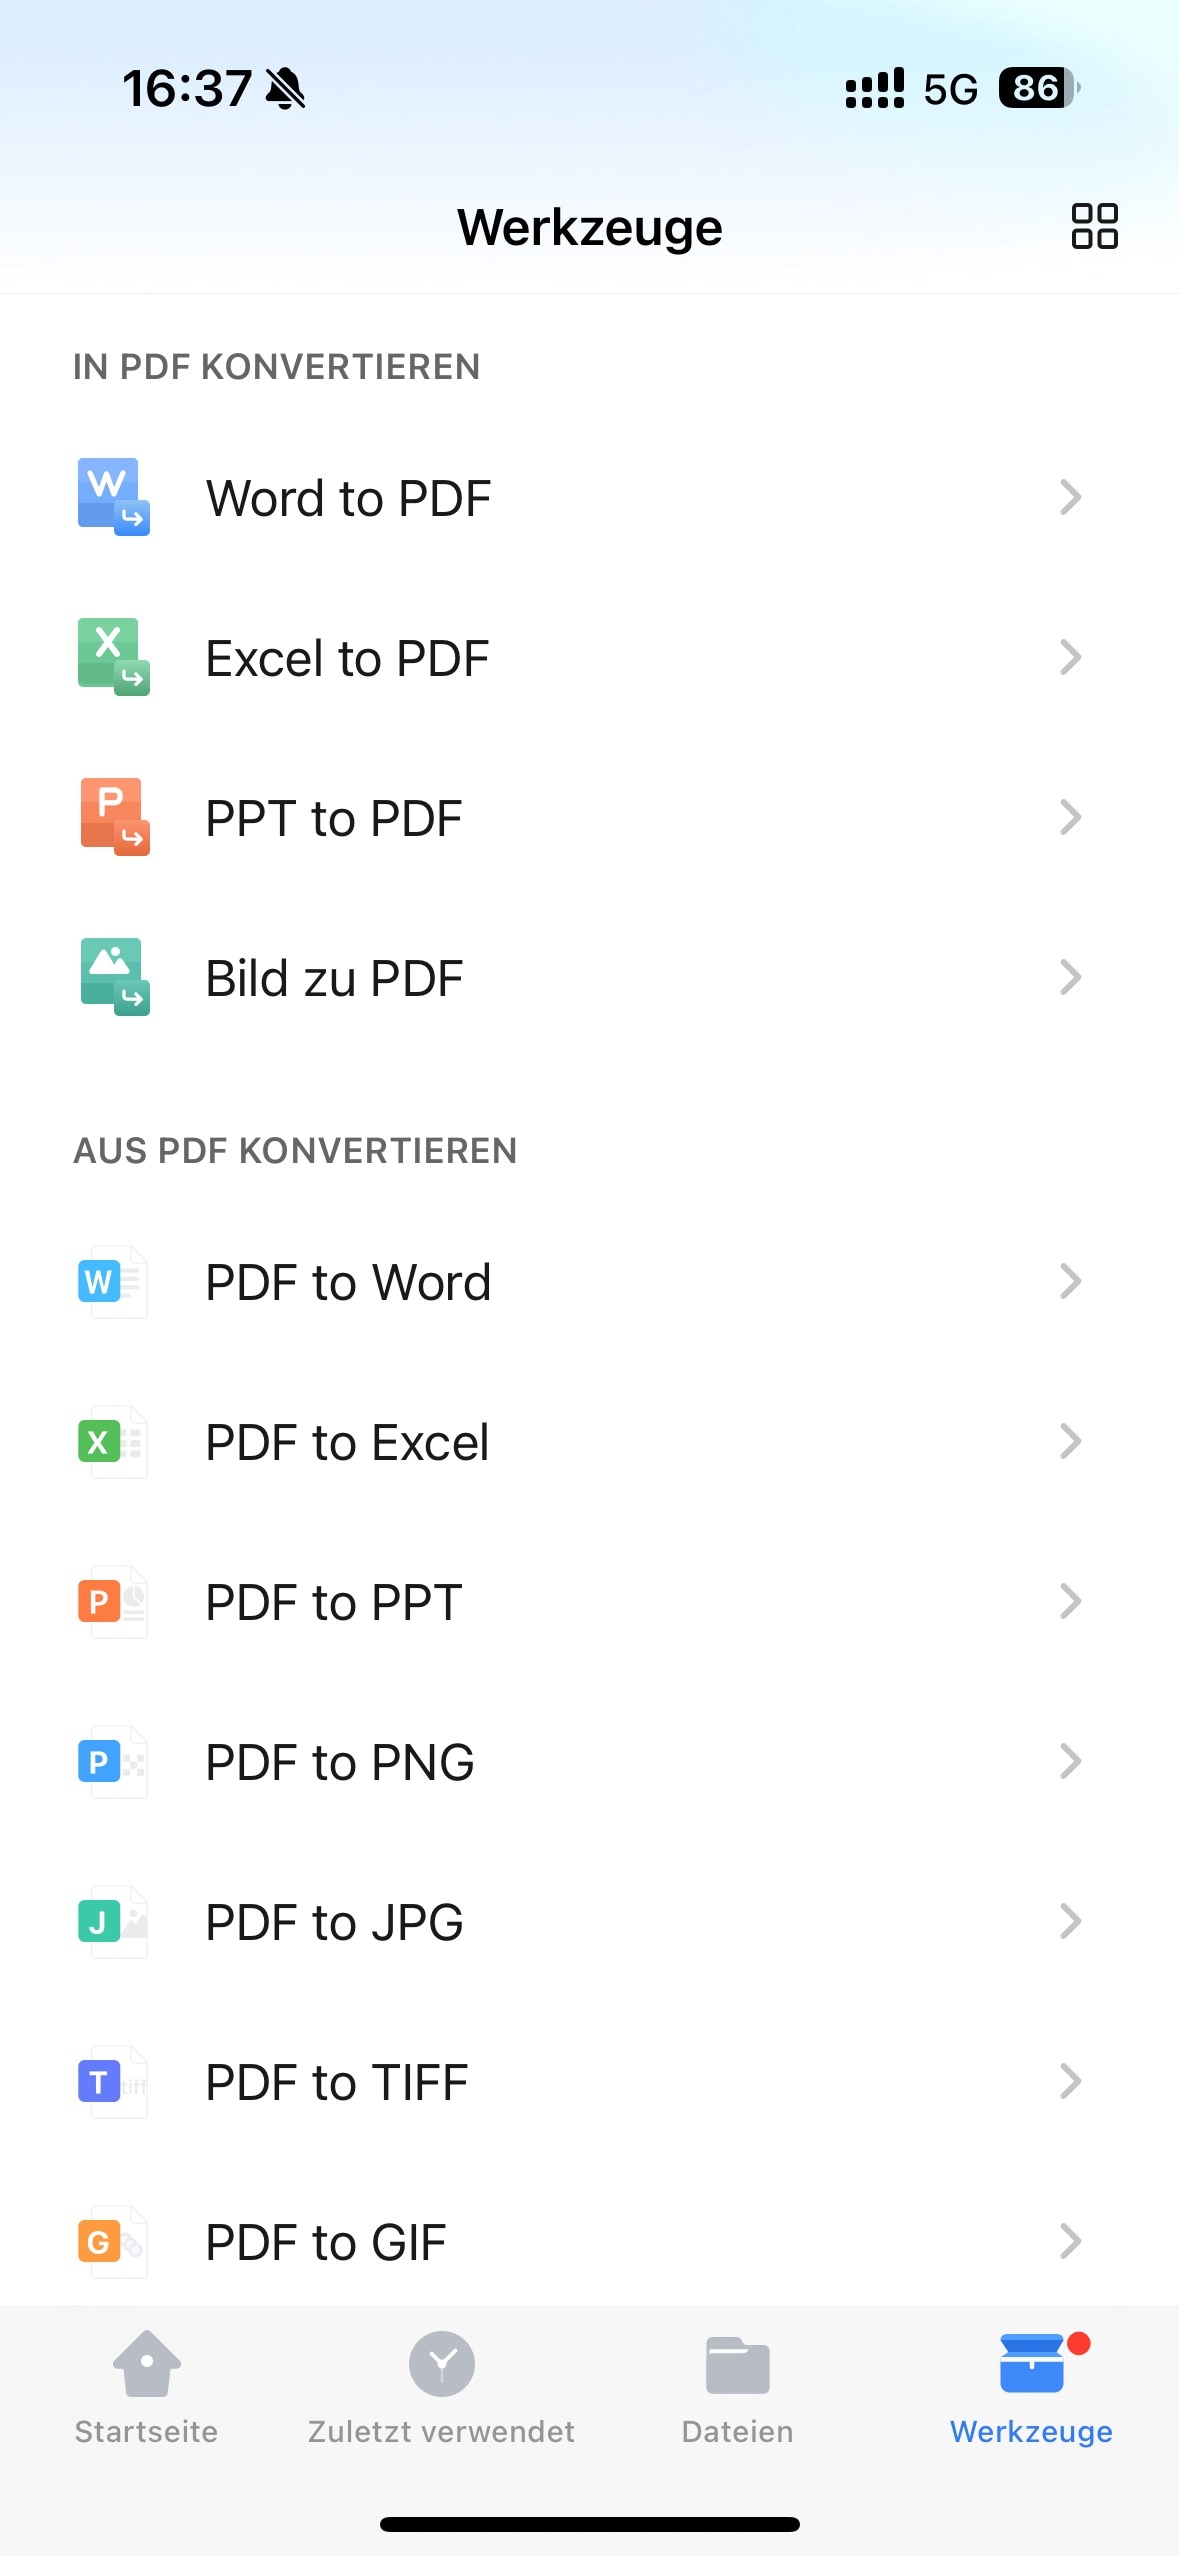 Klicken Sie anschließend in der Menüleiste unten auf „Extras“, wählen Sie „PDF zu Word“ und wählen Sie die gerade hochgeladene Datei aus, um die Konvertierung zu starten.